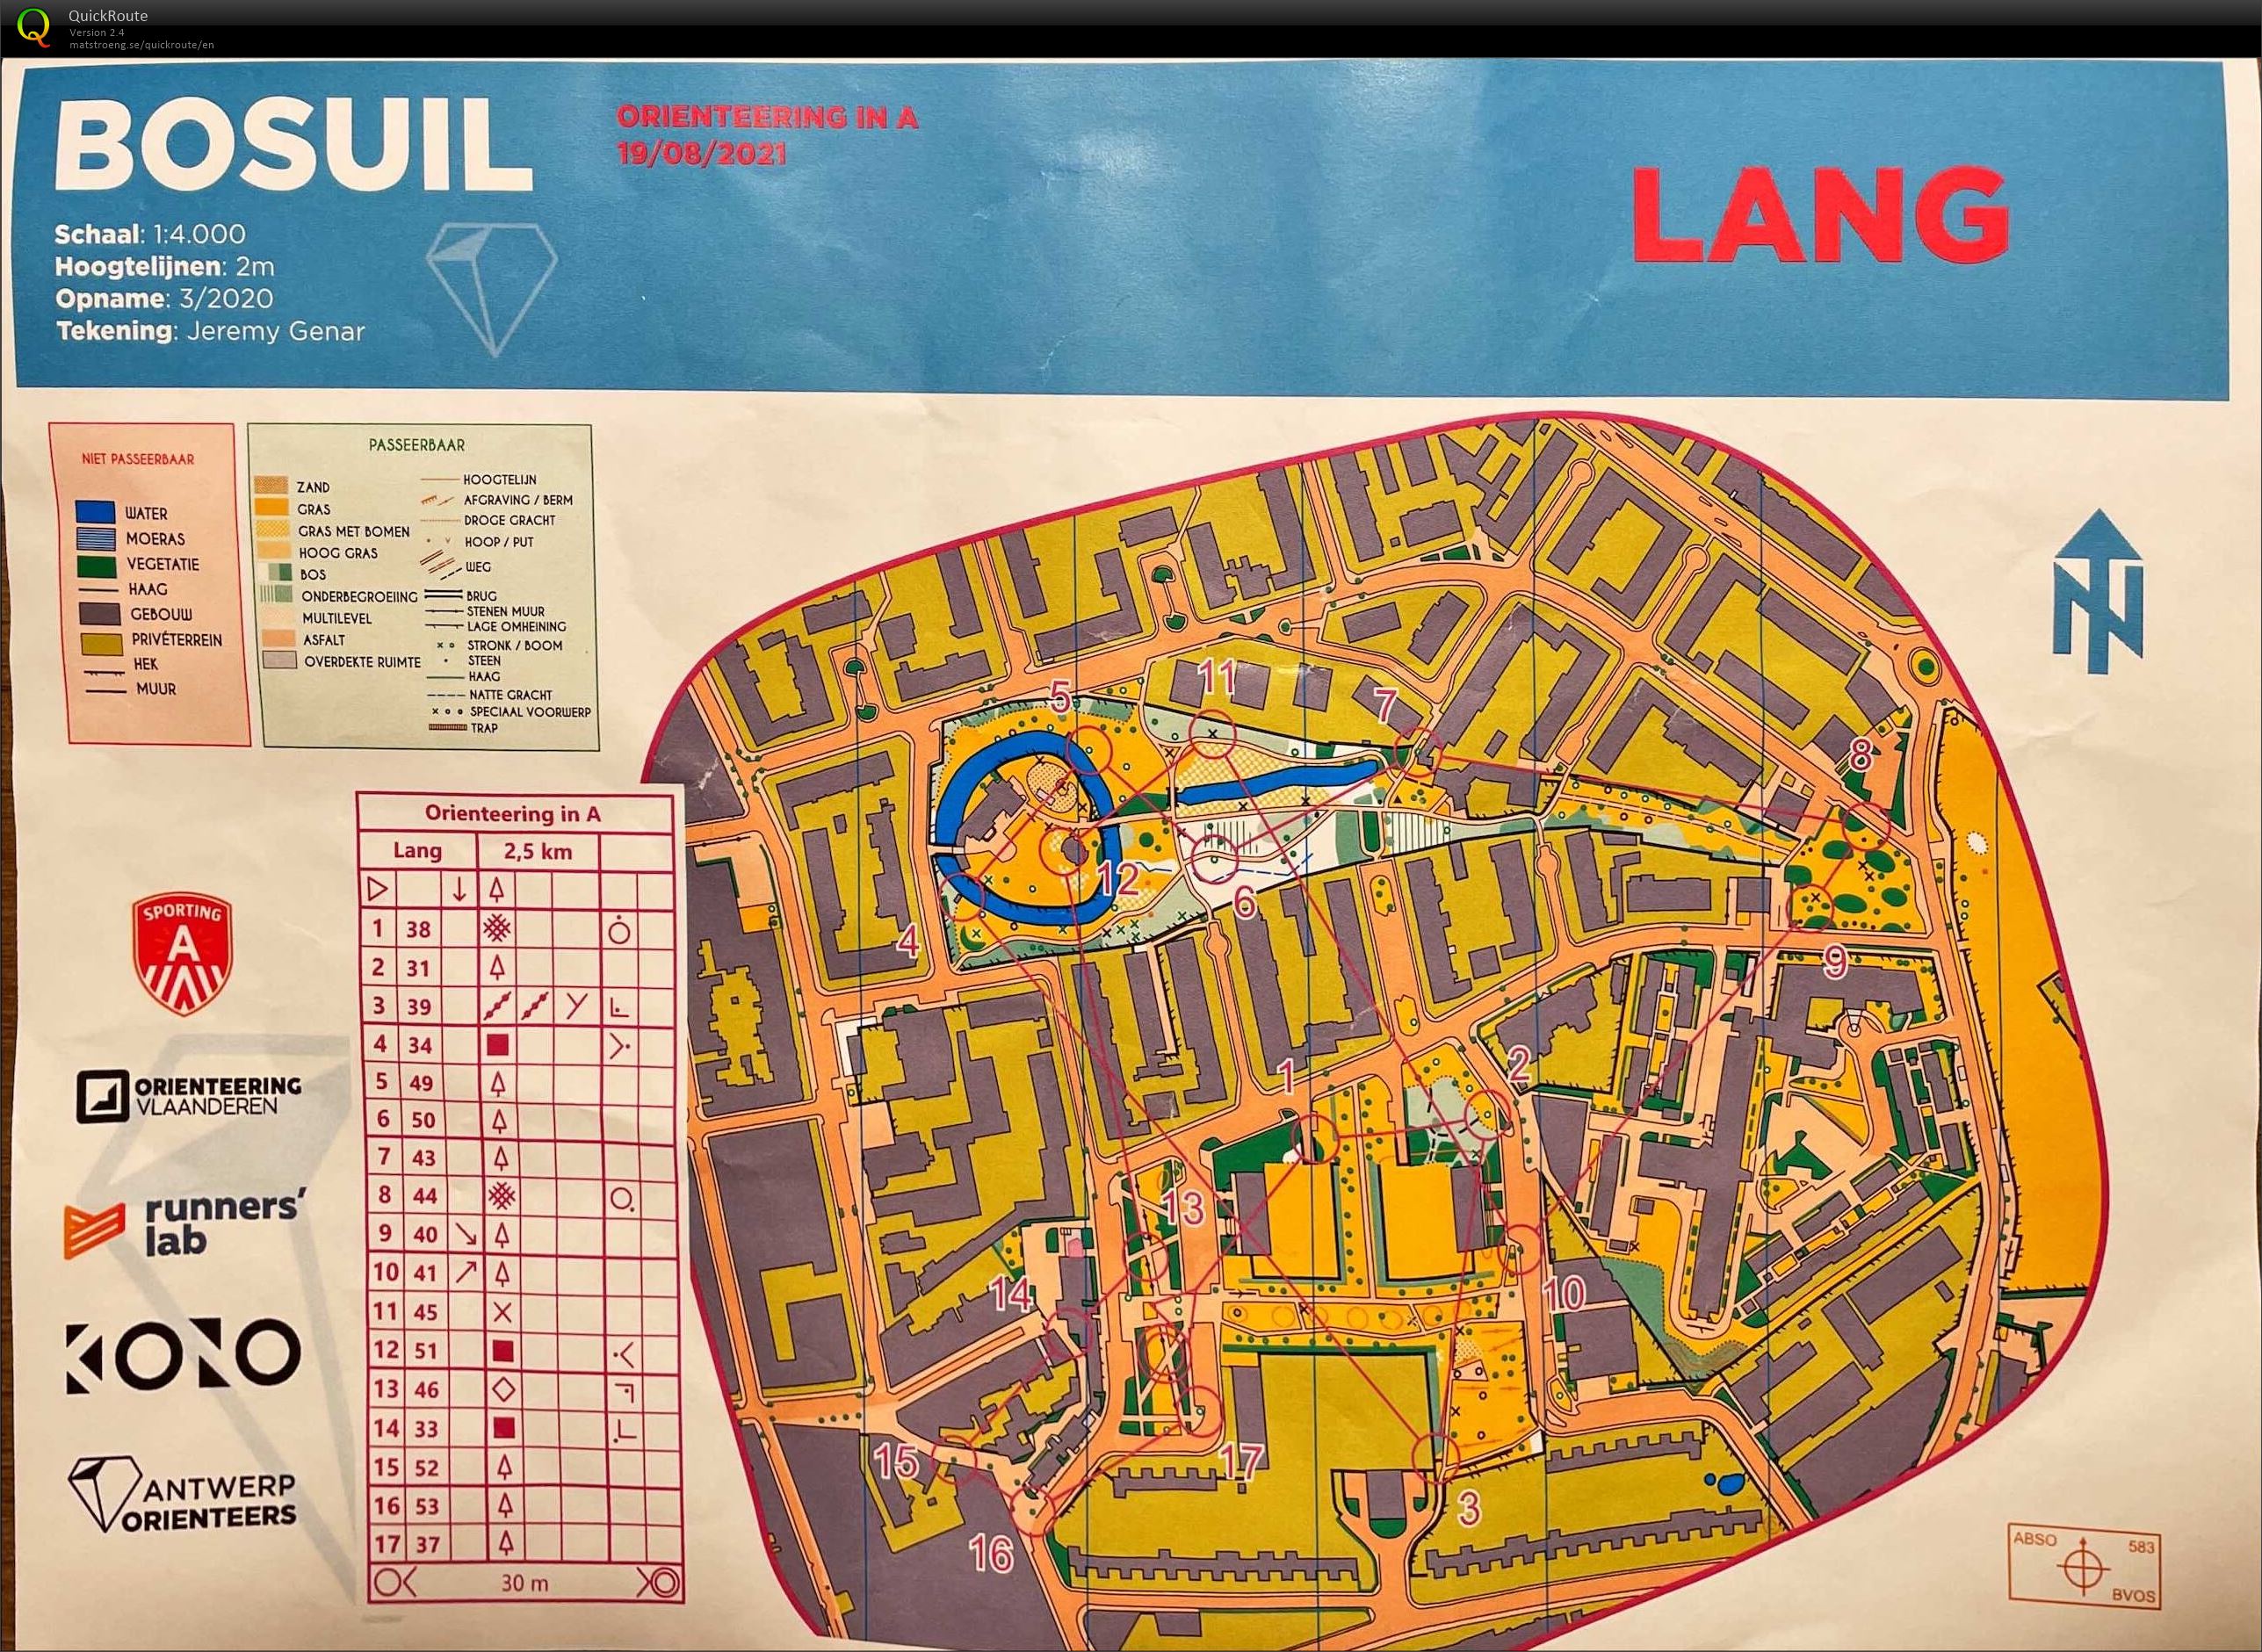 Orienteering in A - Bosuil - Lang (2021-08-19)